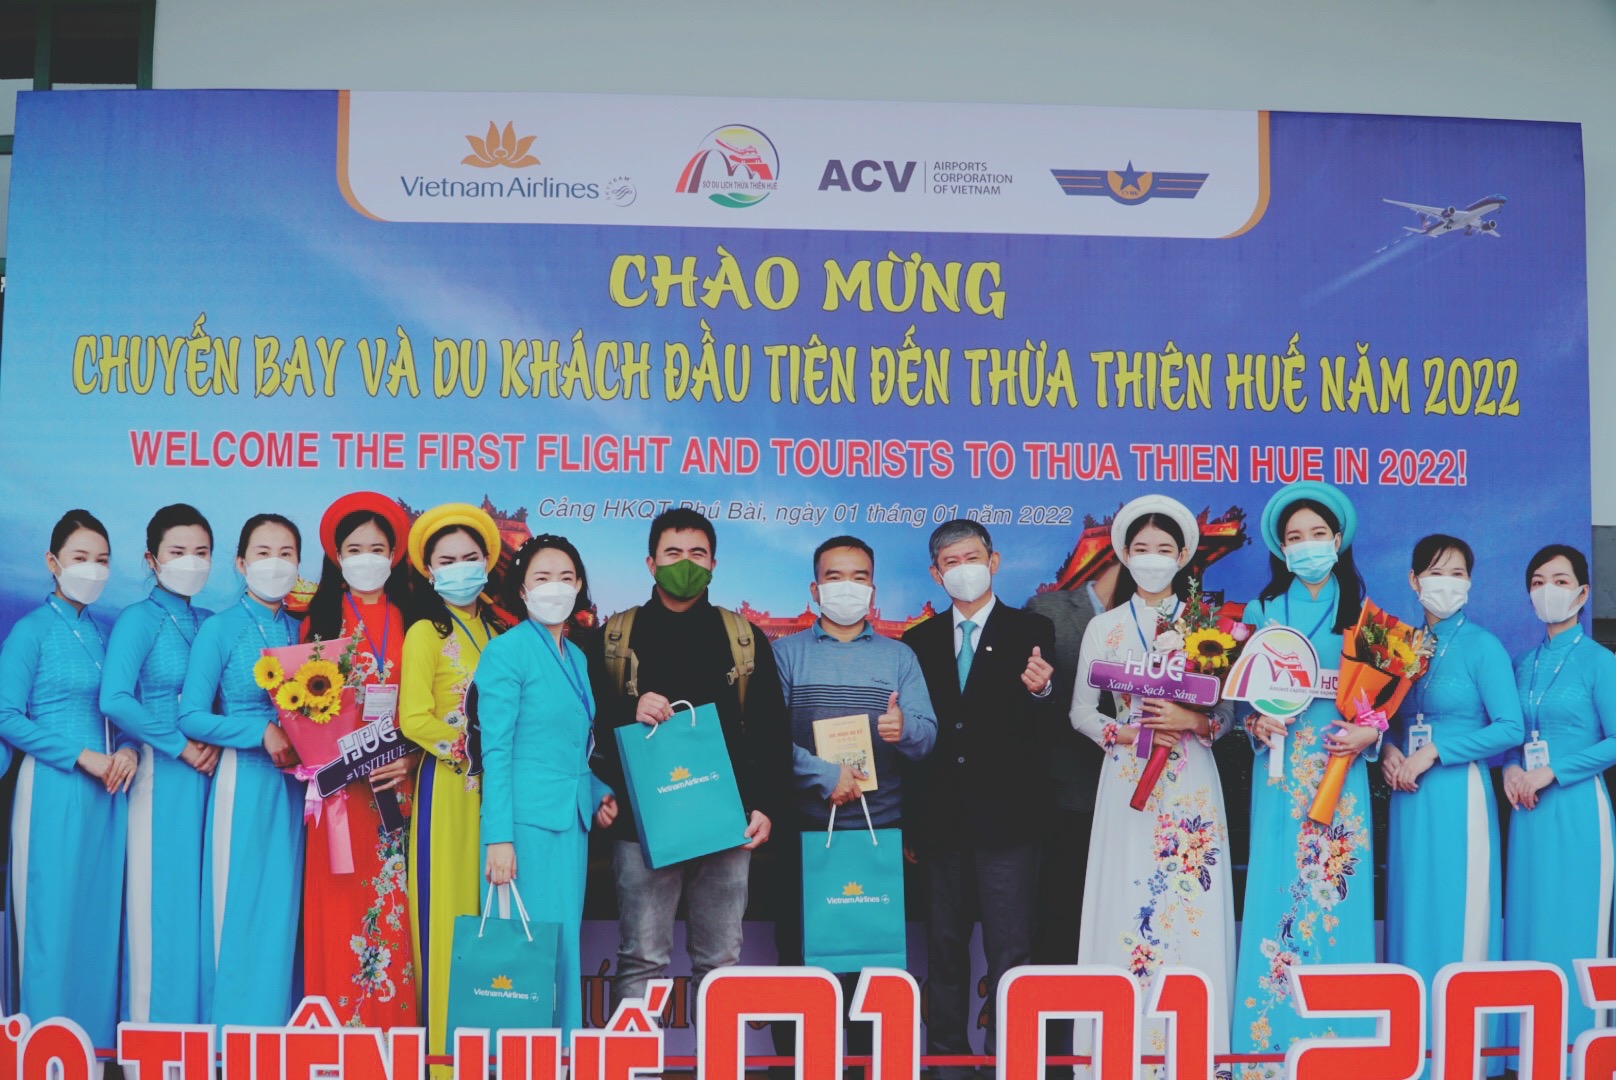 Lãnh đạo Sở Du lịch Thừa Thiên Huế chào đón những vị khách đầu tiên trên chuyến bay VN1543 Hà Nội – Huế đáp lúc 09h25 